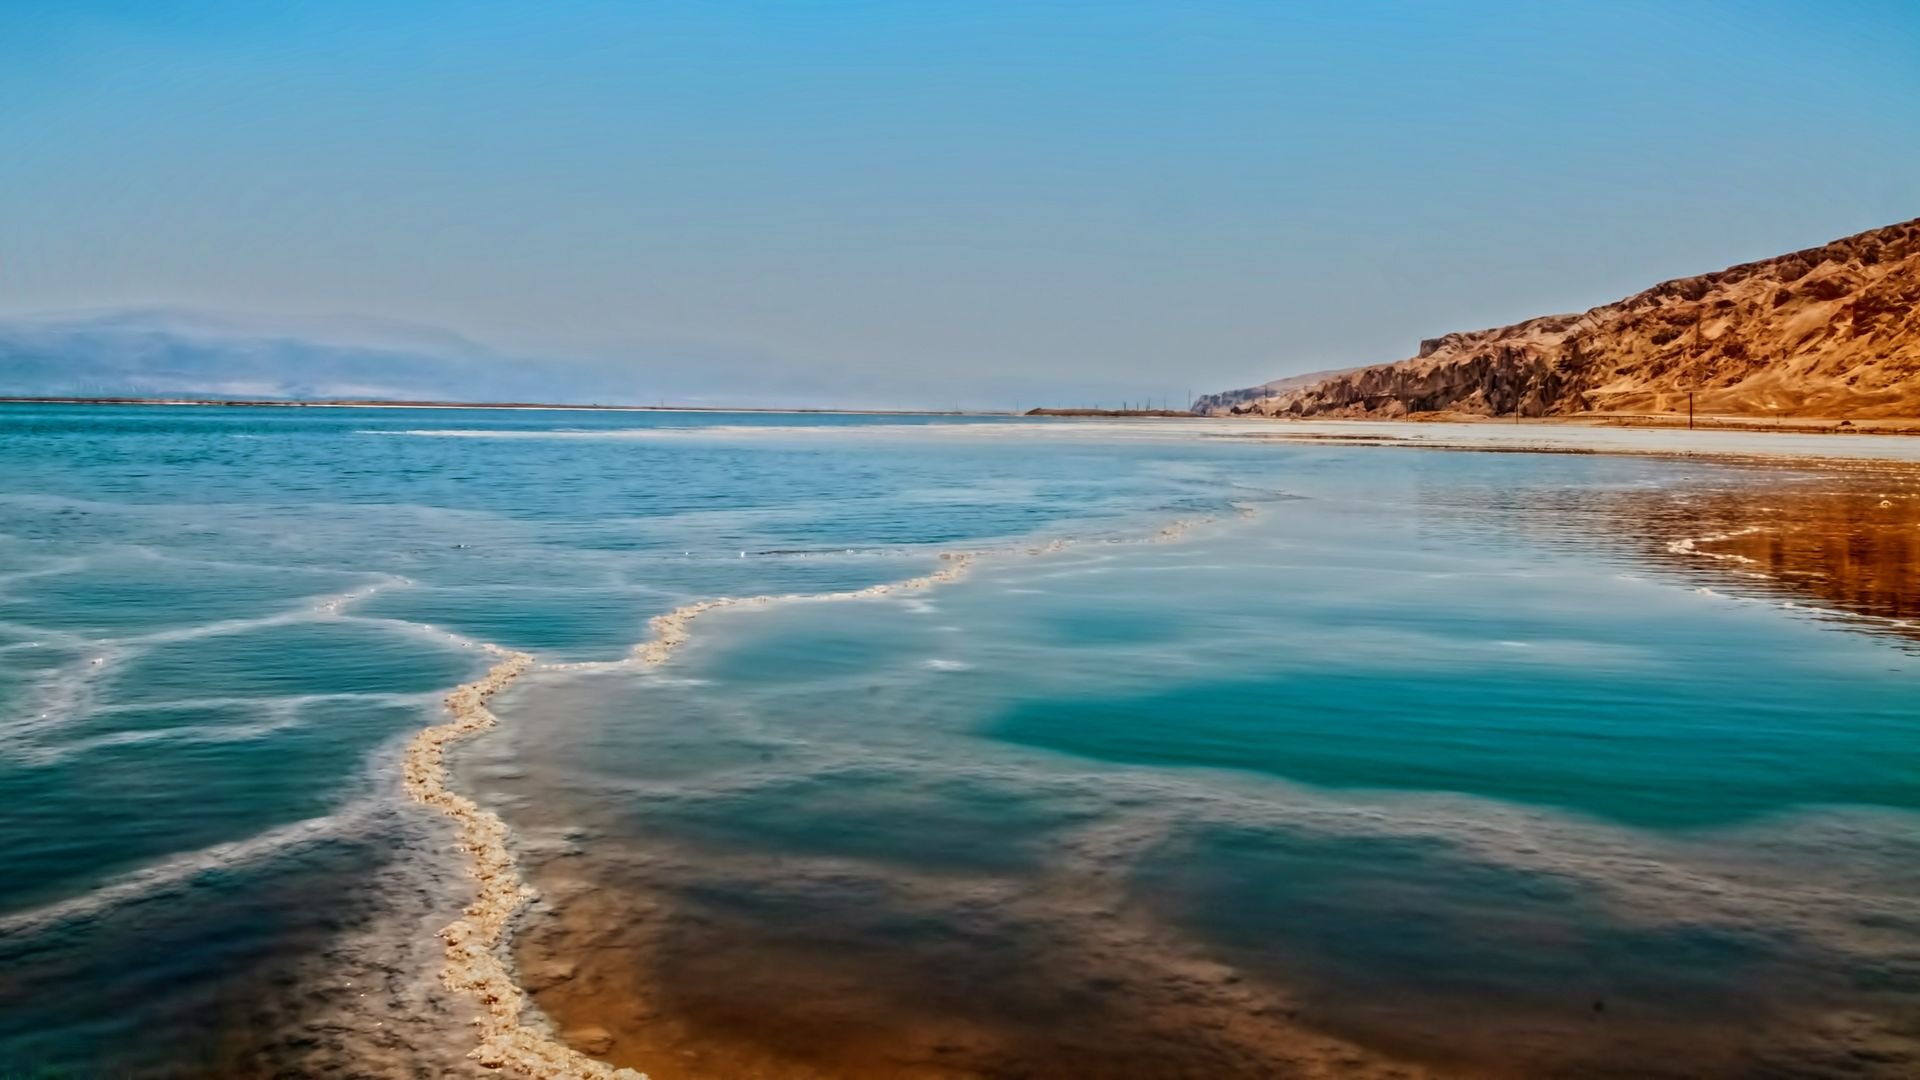 Индийский океан соленый. Иордания Мертвое море.